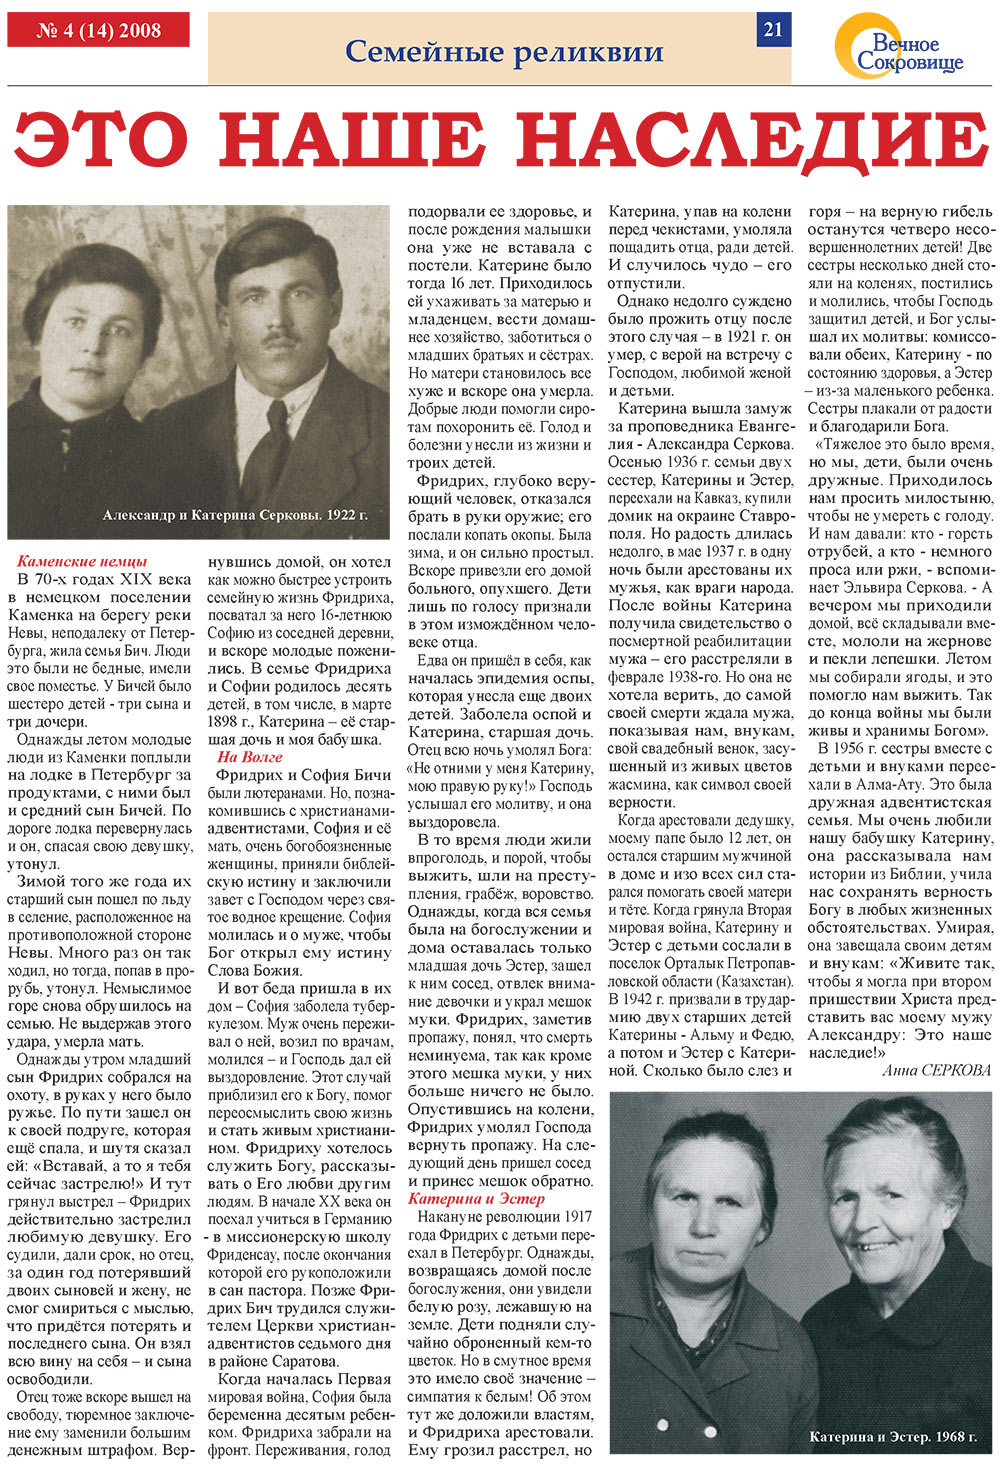 Вечное сокровище (газета). 2008 год, номер 4, стр. 21